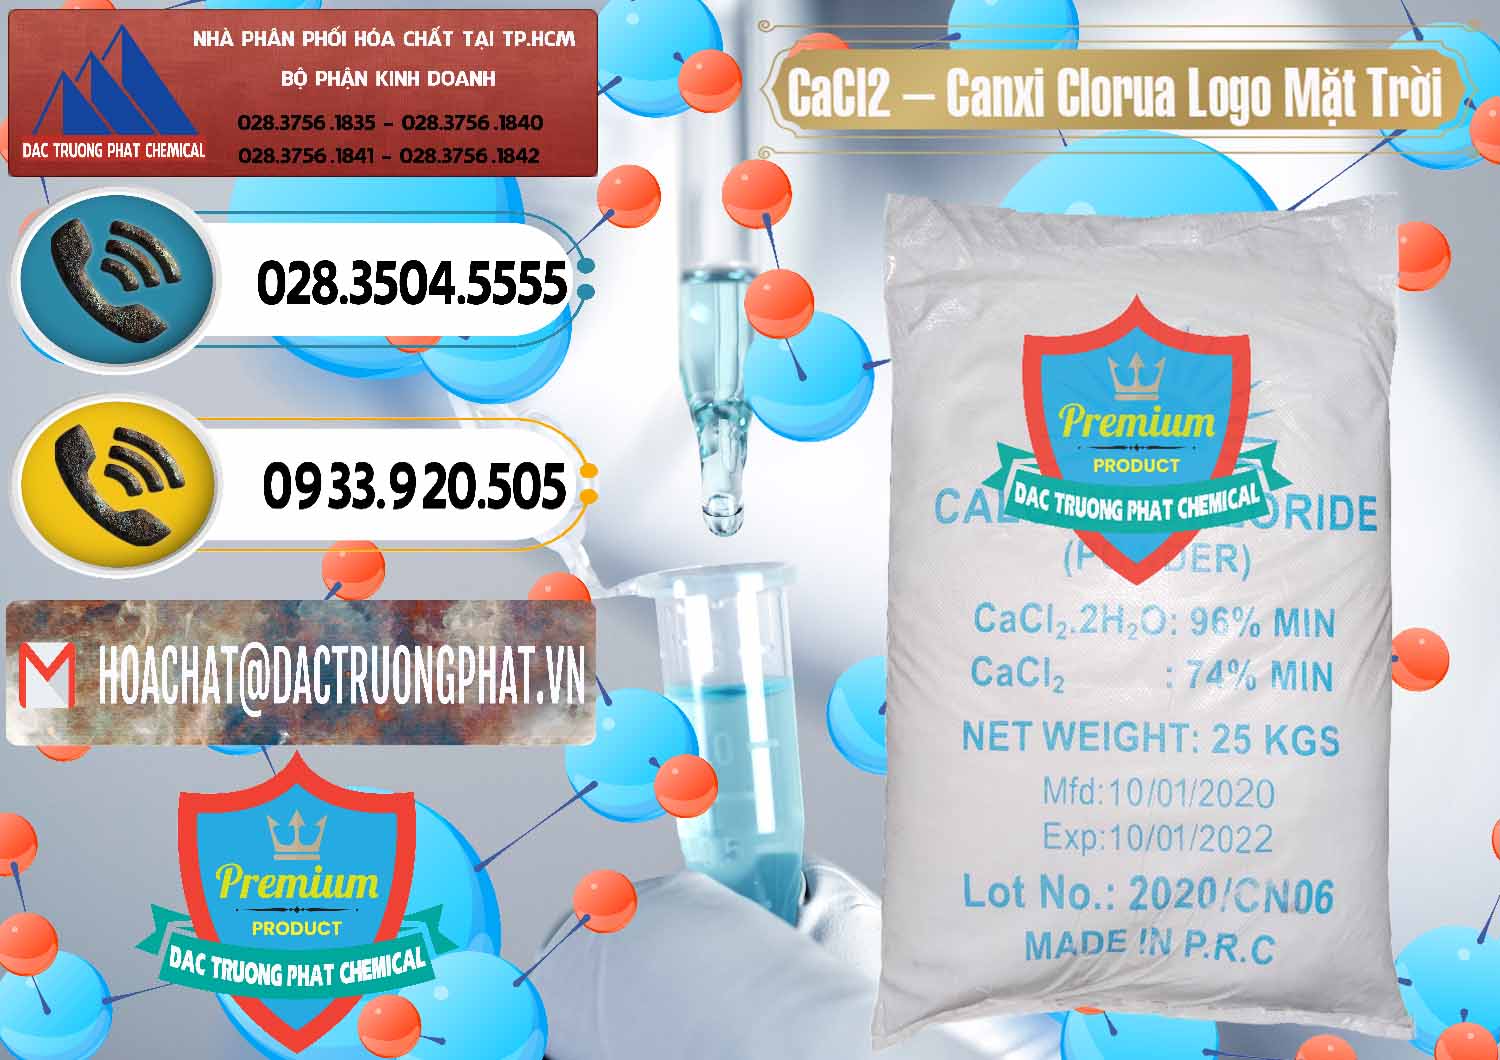 Cty nhập khẩu & bán CaCl2 – Canxi Clorua 96% Logo Mặt Trời Trung Quốc China - 0041 - Chuyên cung cấp và bán hóa chất tại TP.HCM - hoachatdetnhuom.vn